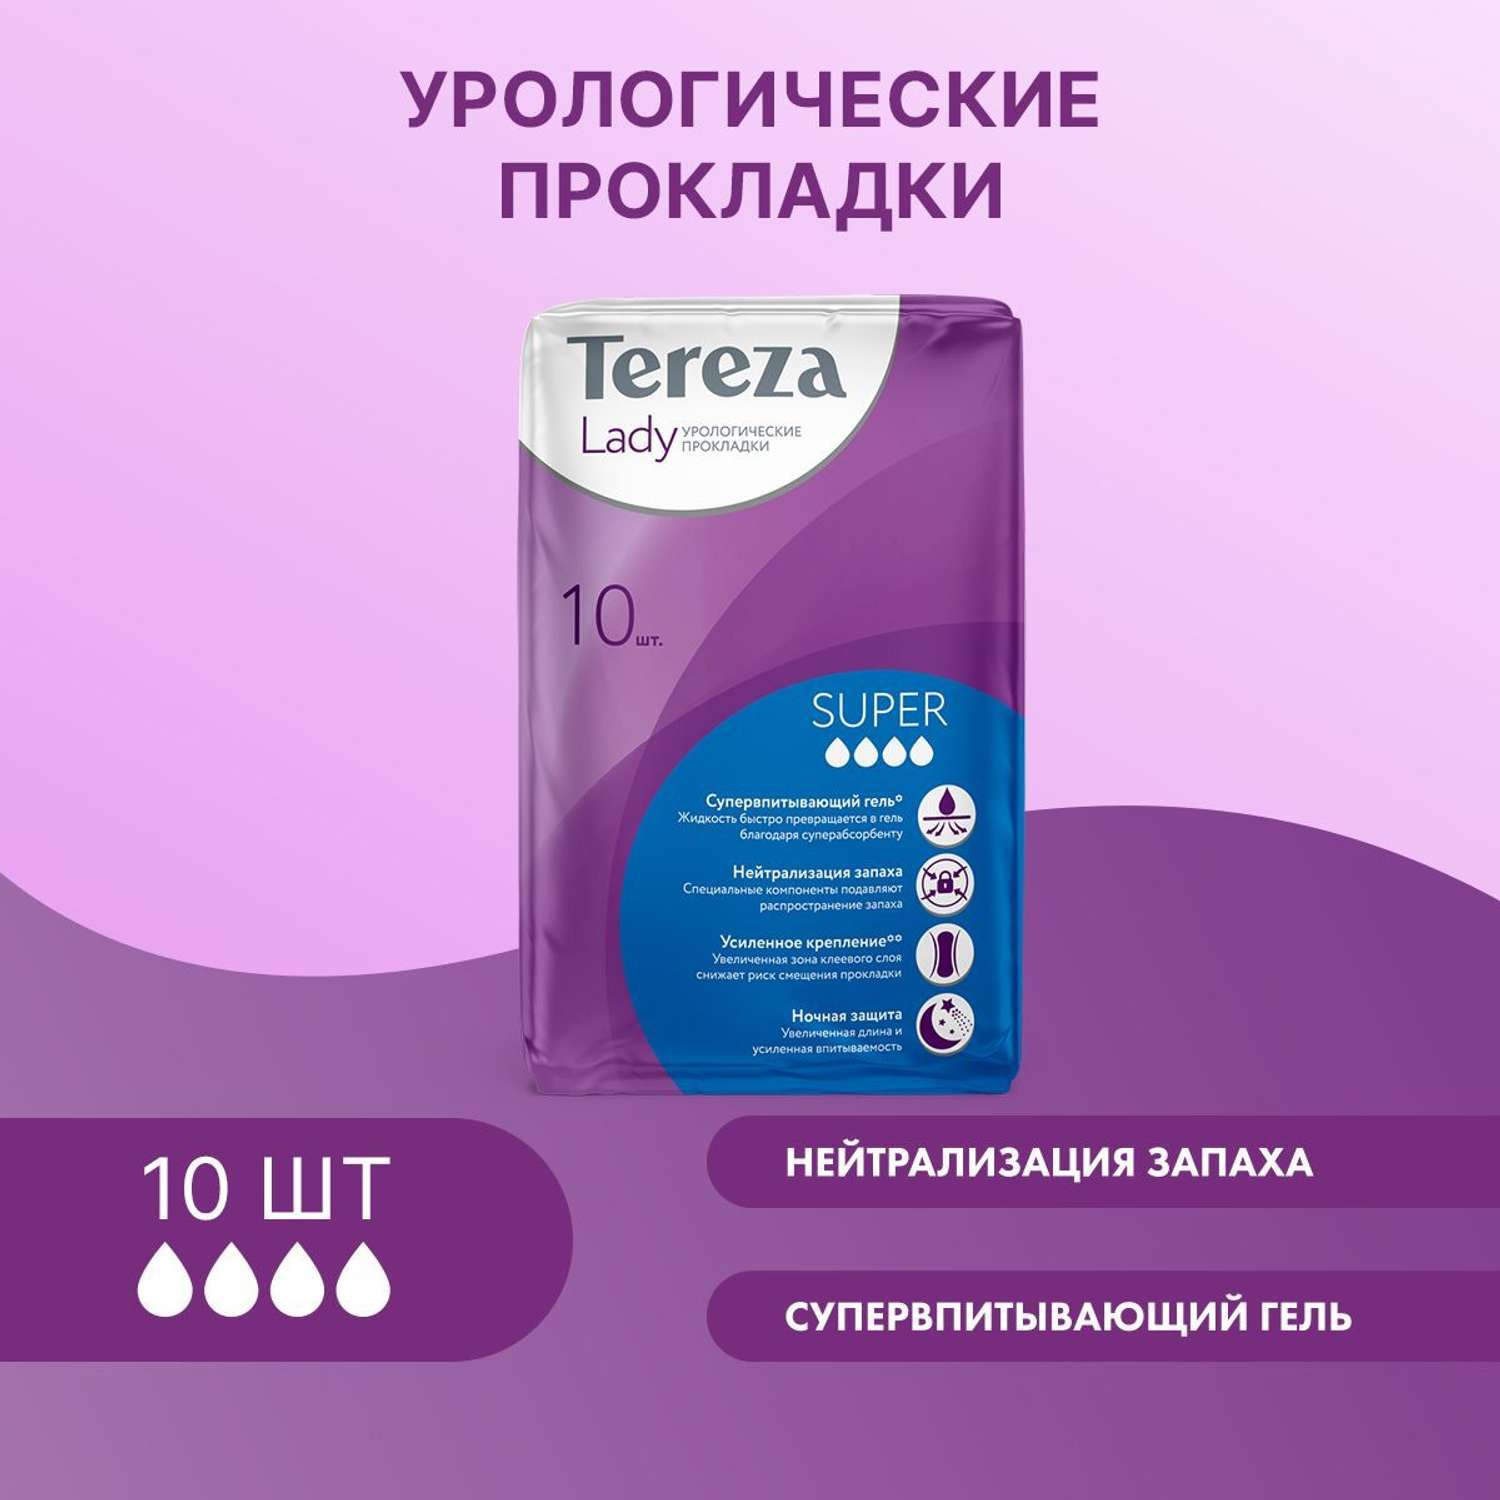 Урологические прокладки TerezaLady для женщин Super при недержании супервпитывающие нейтрализующие запах трехслойные 10 шт - фото 1